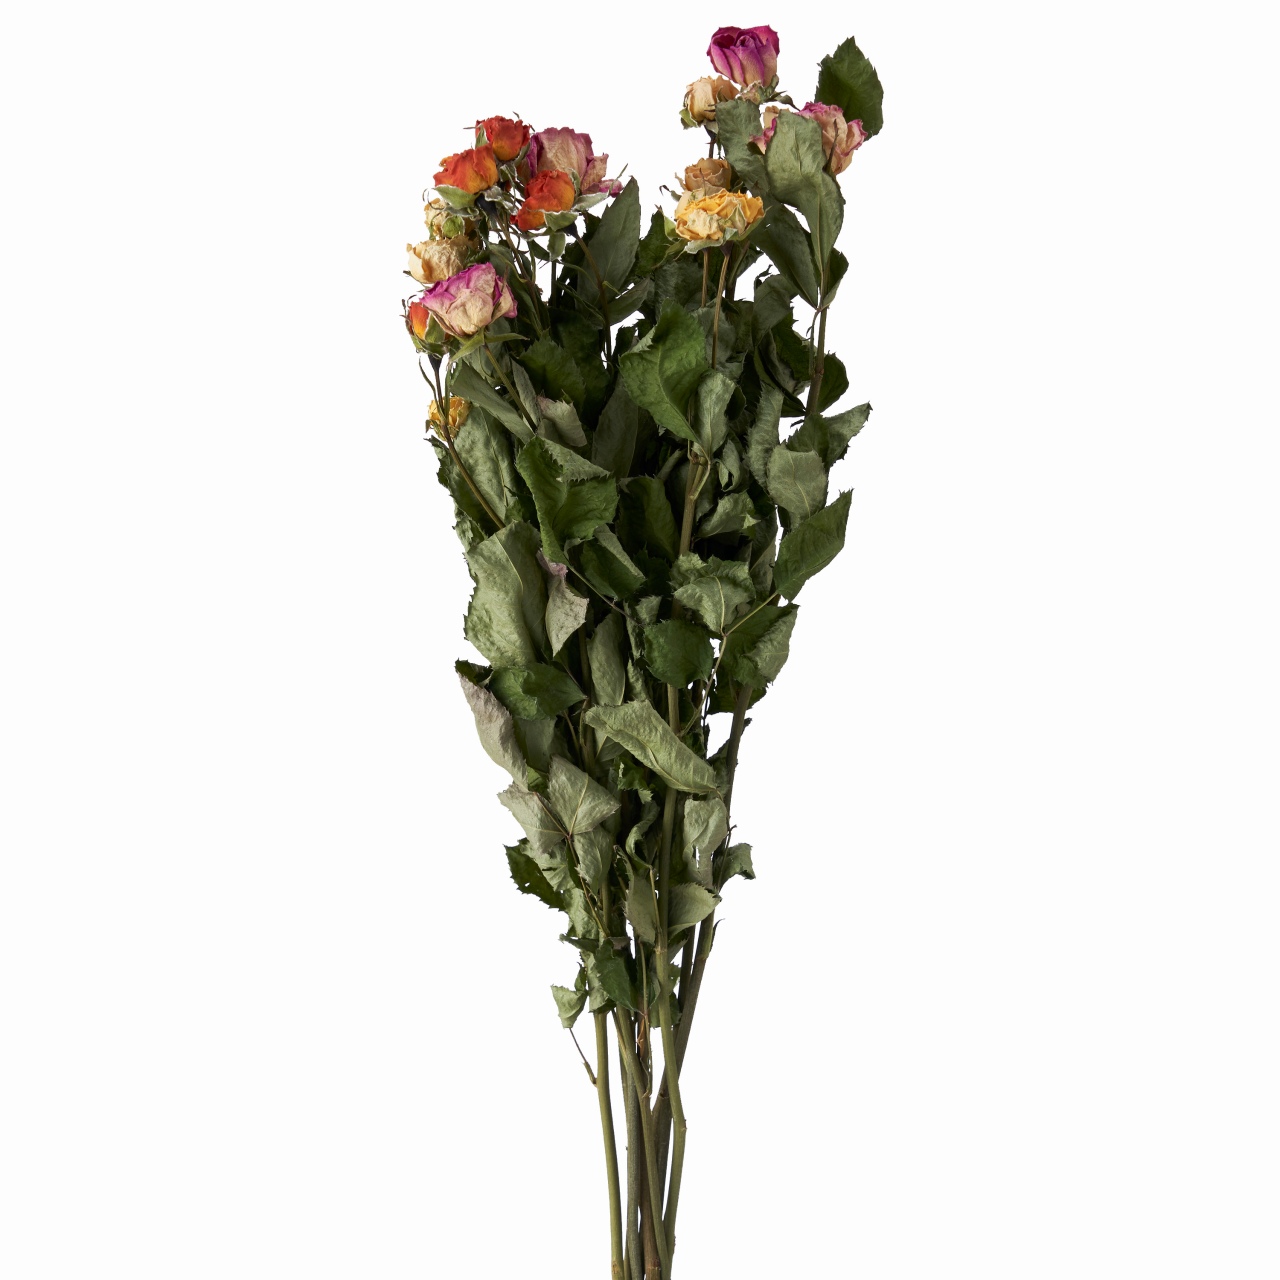 マイフラ 通販 風の花 スプレーバラ ミックス ドライフラワー Dn ナチュラル ドライフラワー ナチュラル素材 全国にmagiq 花器 花資材などをお届けします